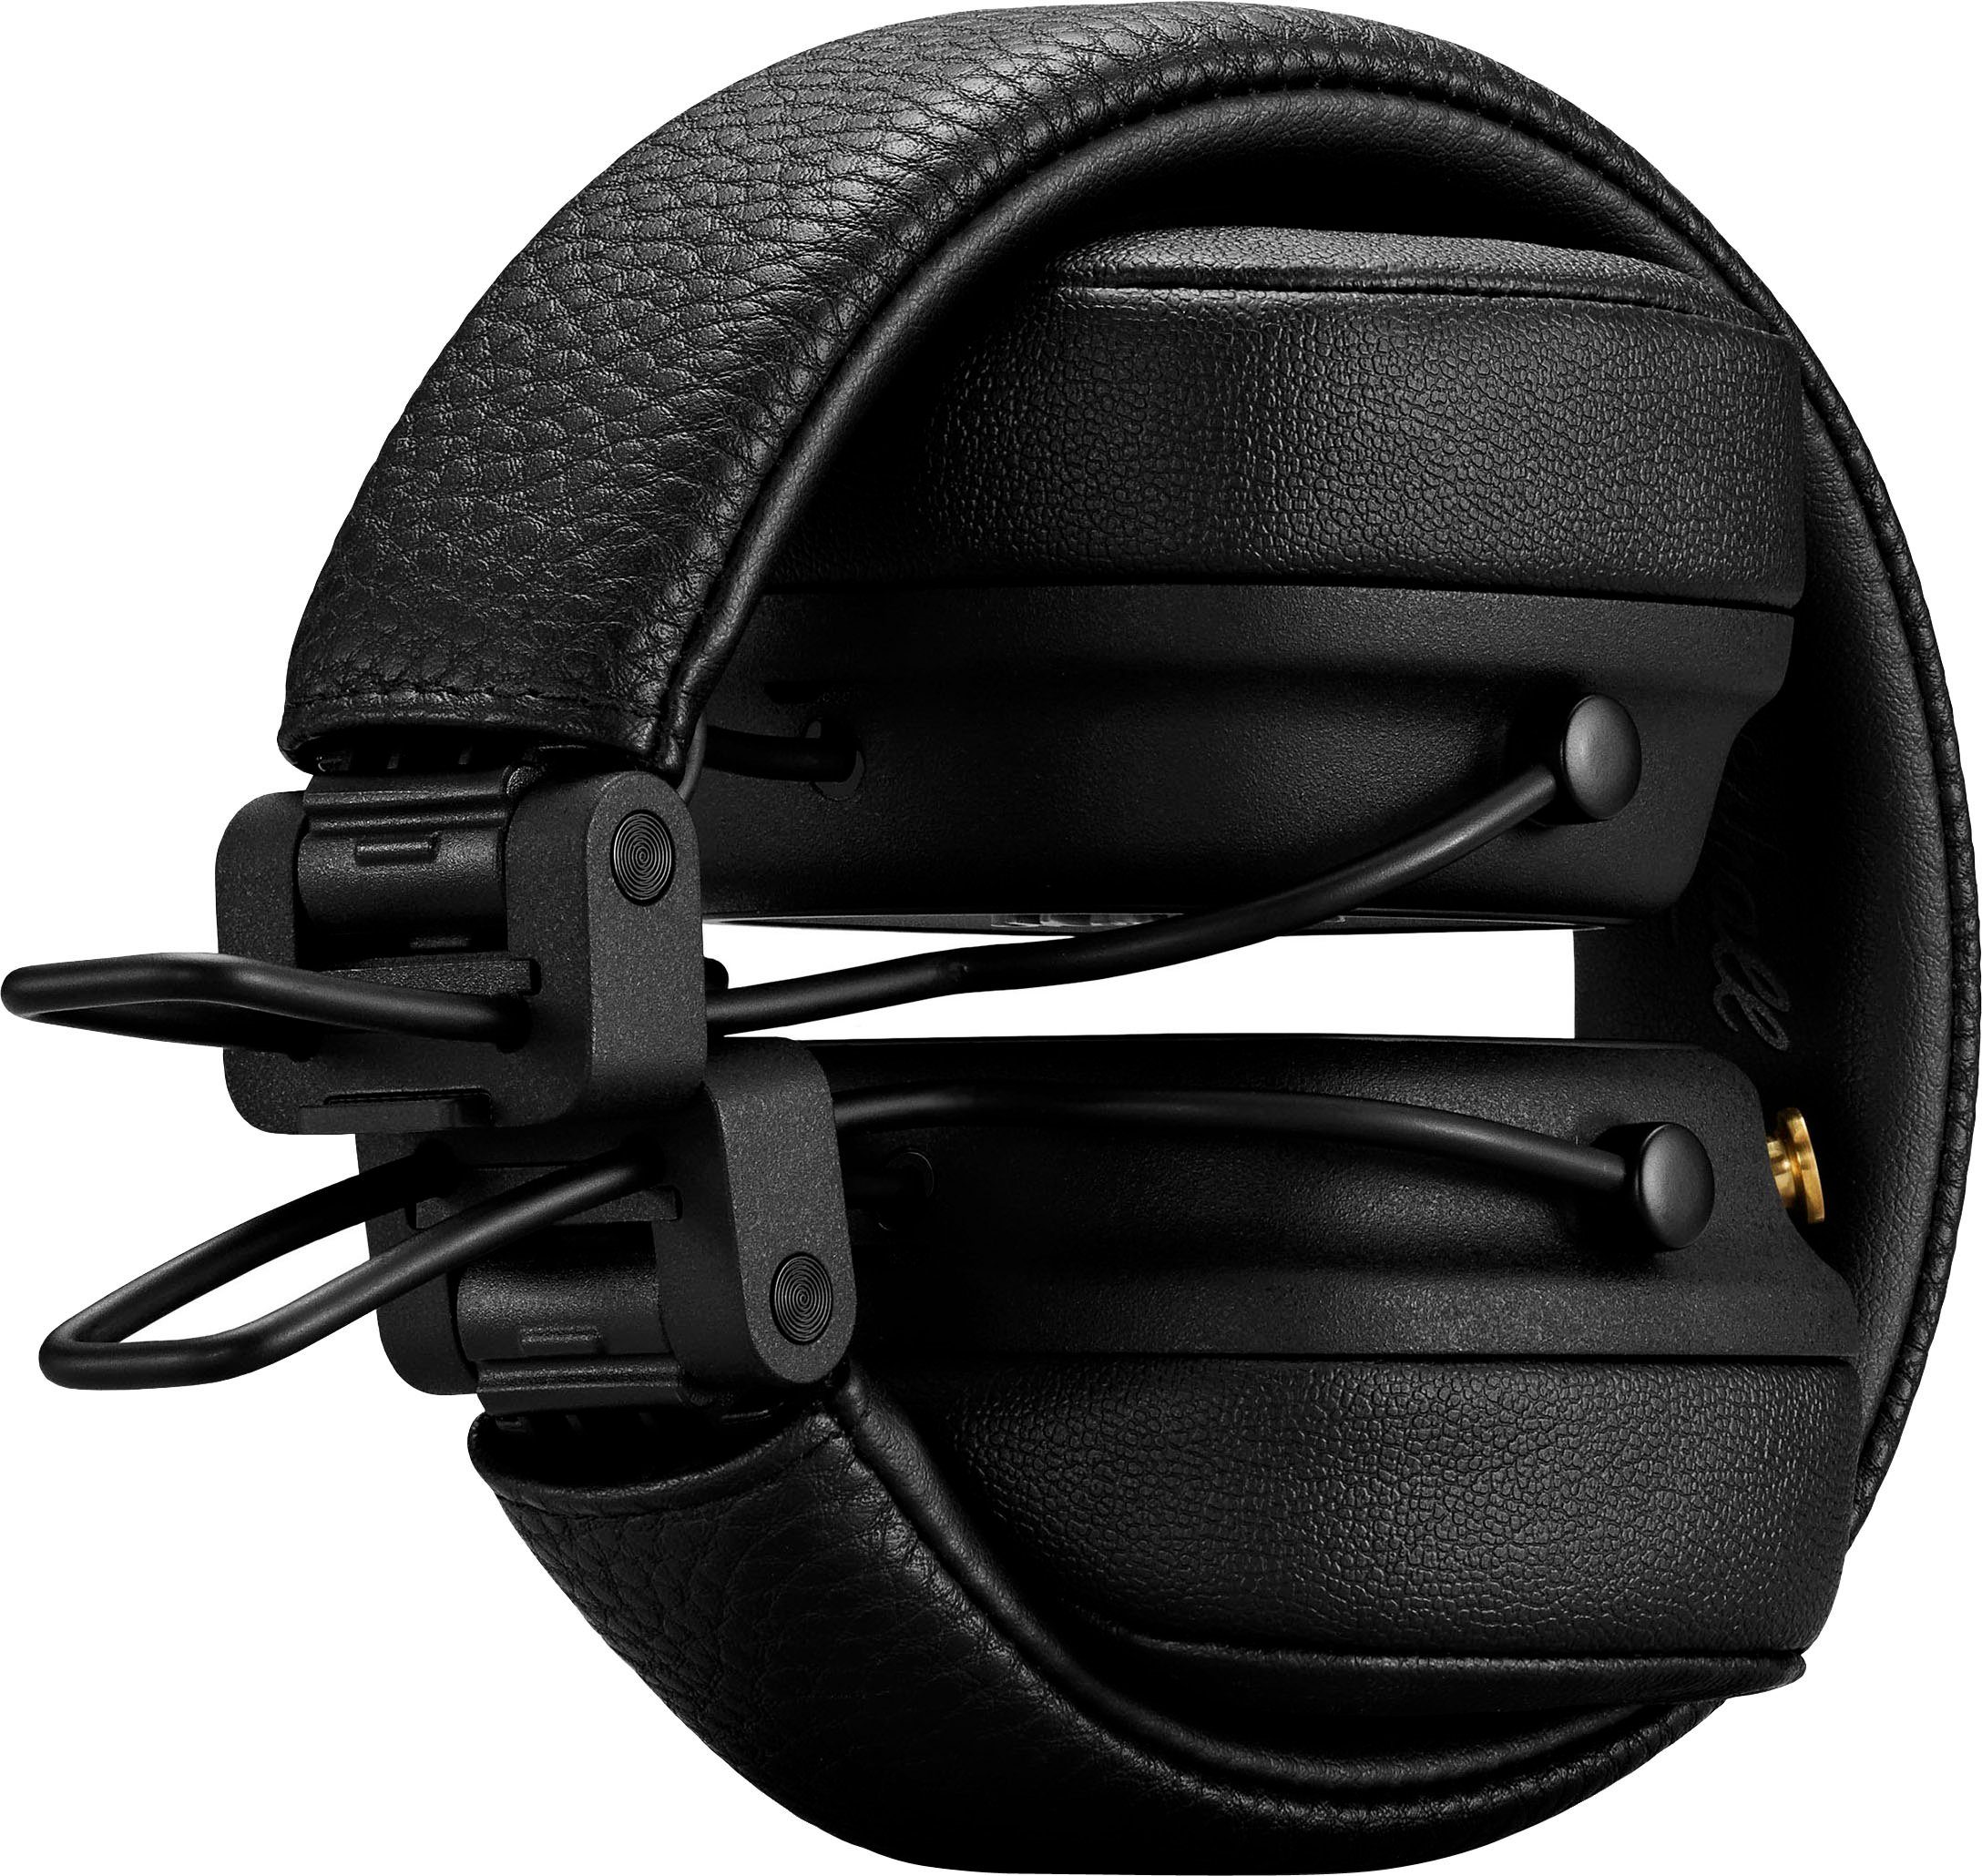 Marshall Major IV Bluetooth-Kopfhörer schwarz Musik, Bluetooth) für (integrierte und Steuerung Anrufe